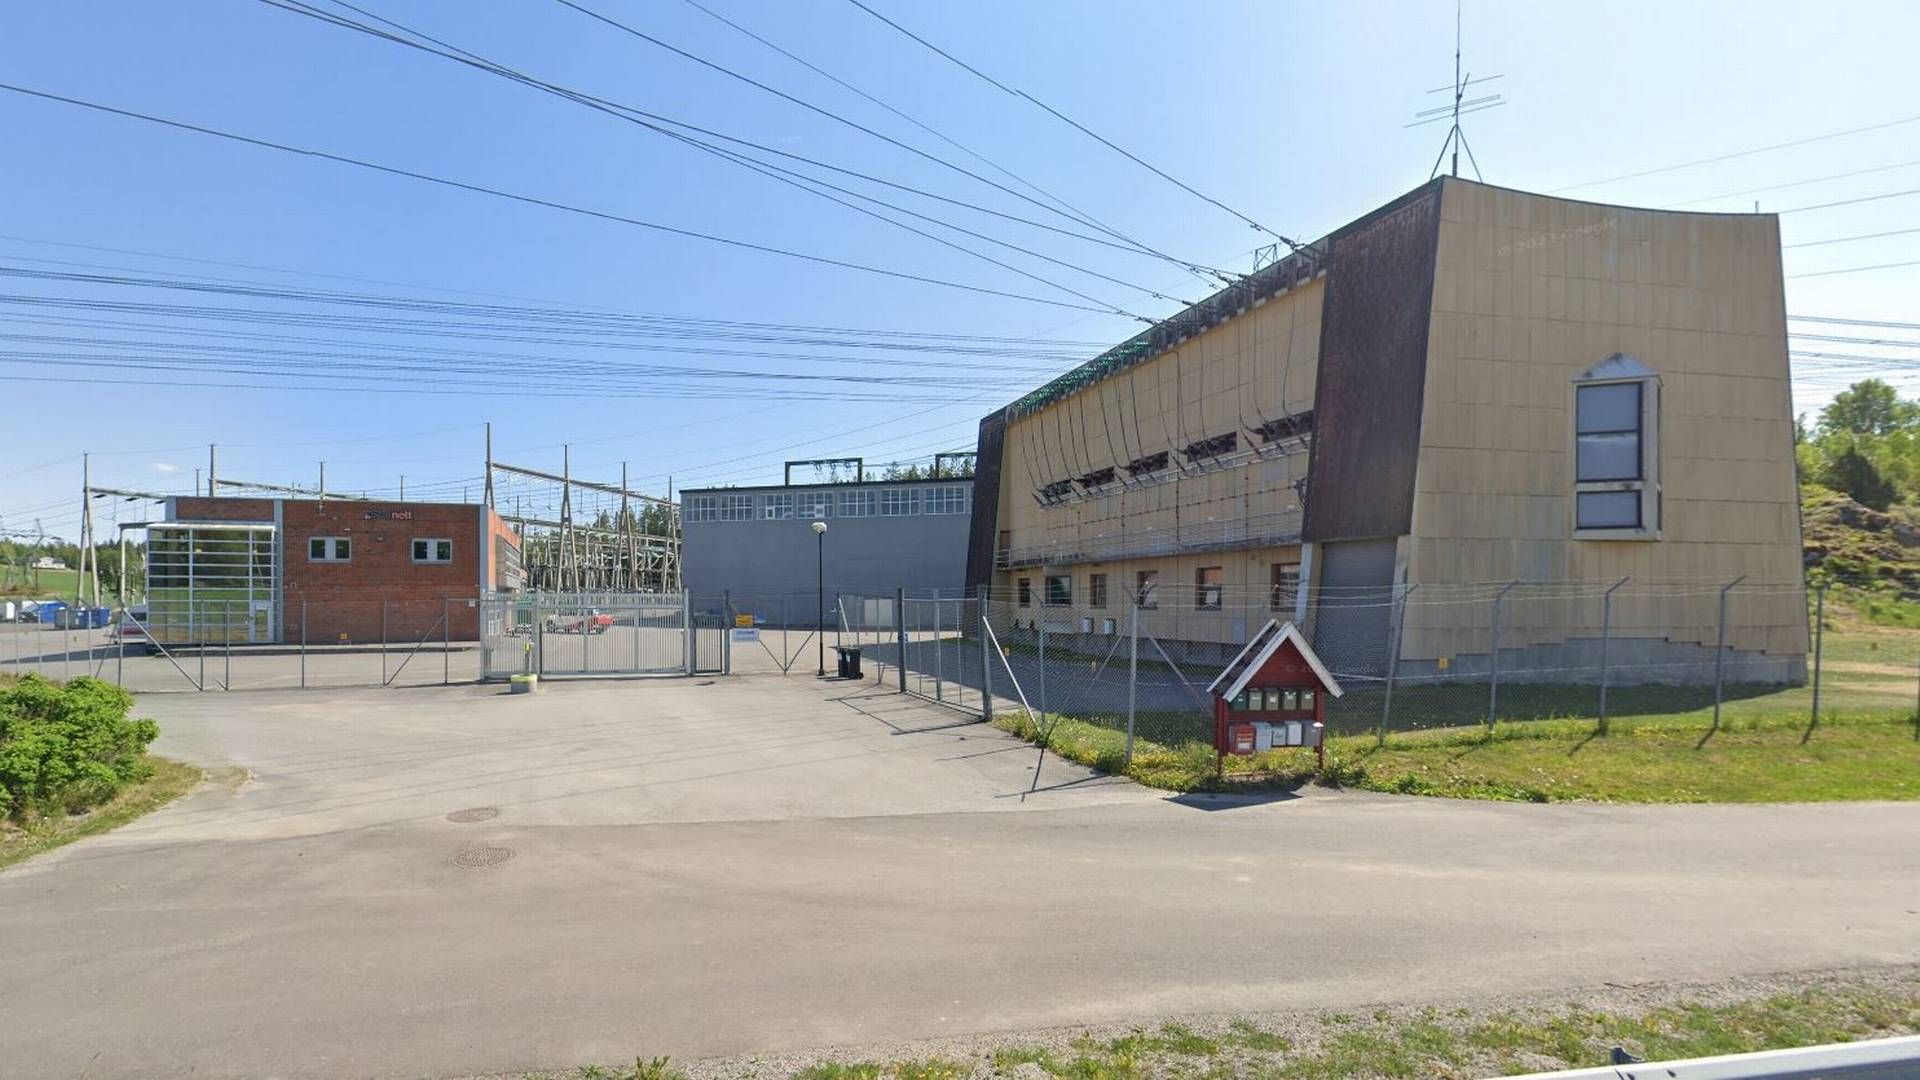 Statnett har betalt erstatning til Elvia etter strømbruddet som følge av arbeid på Tegneby transformatorstasjon. | Foto: Skjermbilde fra Google Maps.